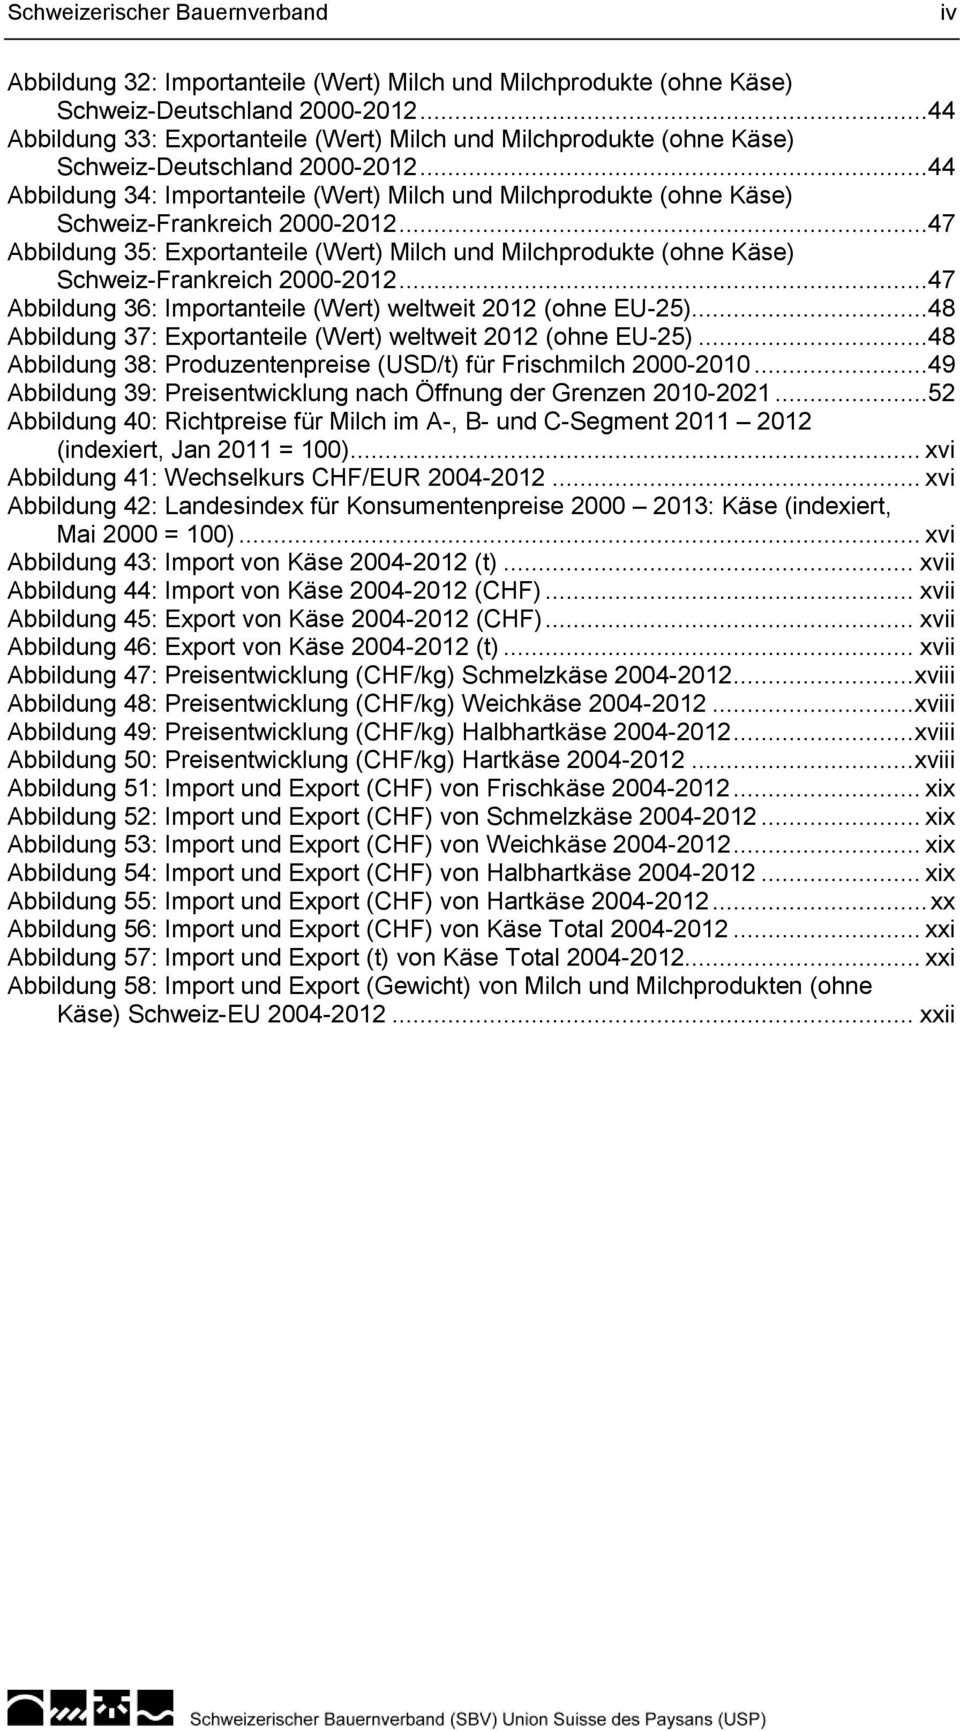 ..44 Abbildung 34: Importanteile (Wert) Milch und Milchprodukte (ohne Käse) Schweiz-Frankreich 2000-2012.